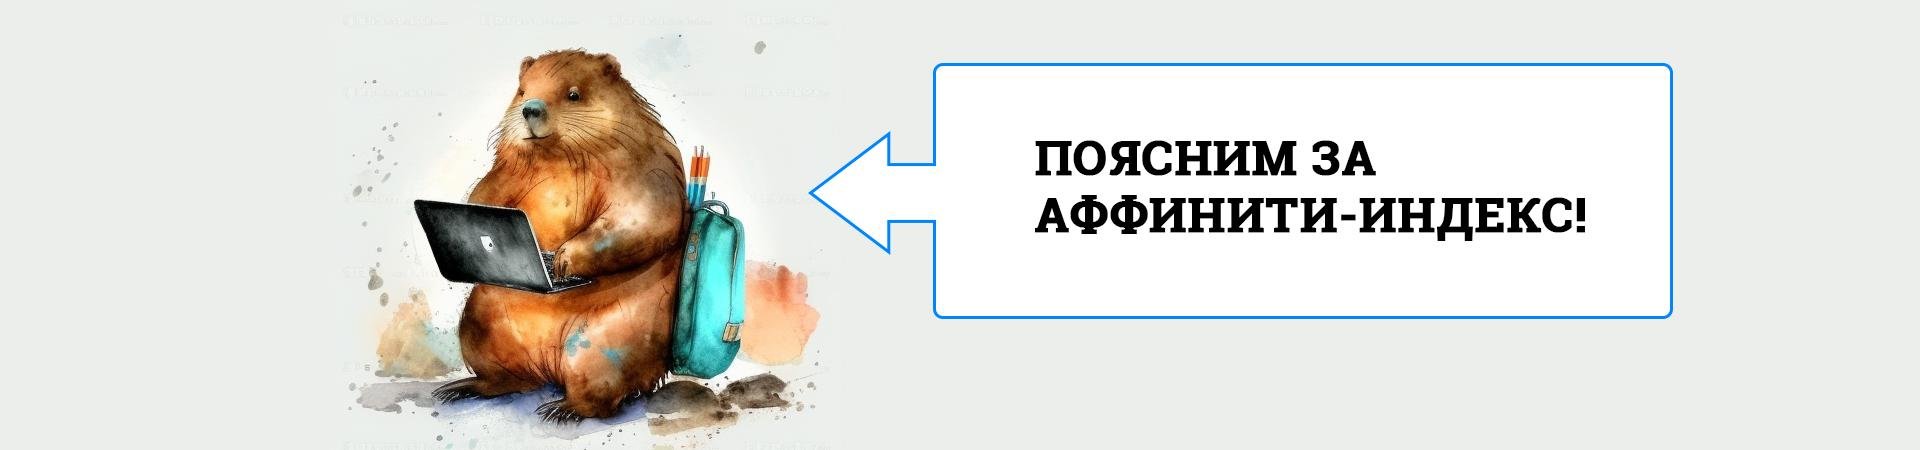 Аффинити-индекс в Яндекс Метрике